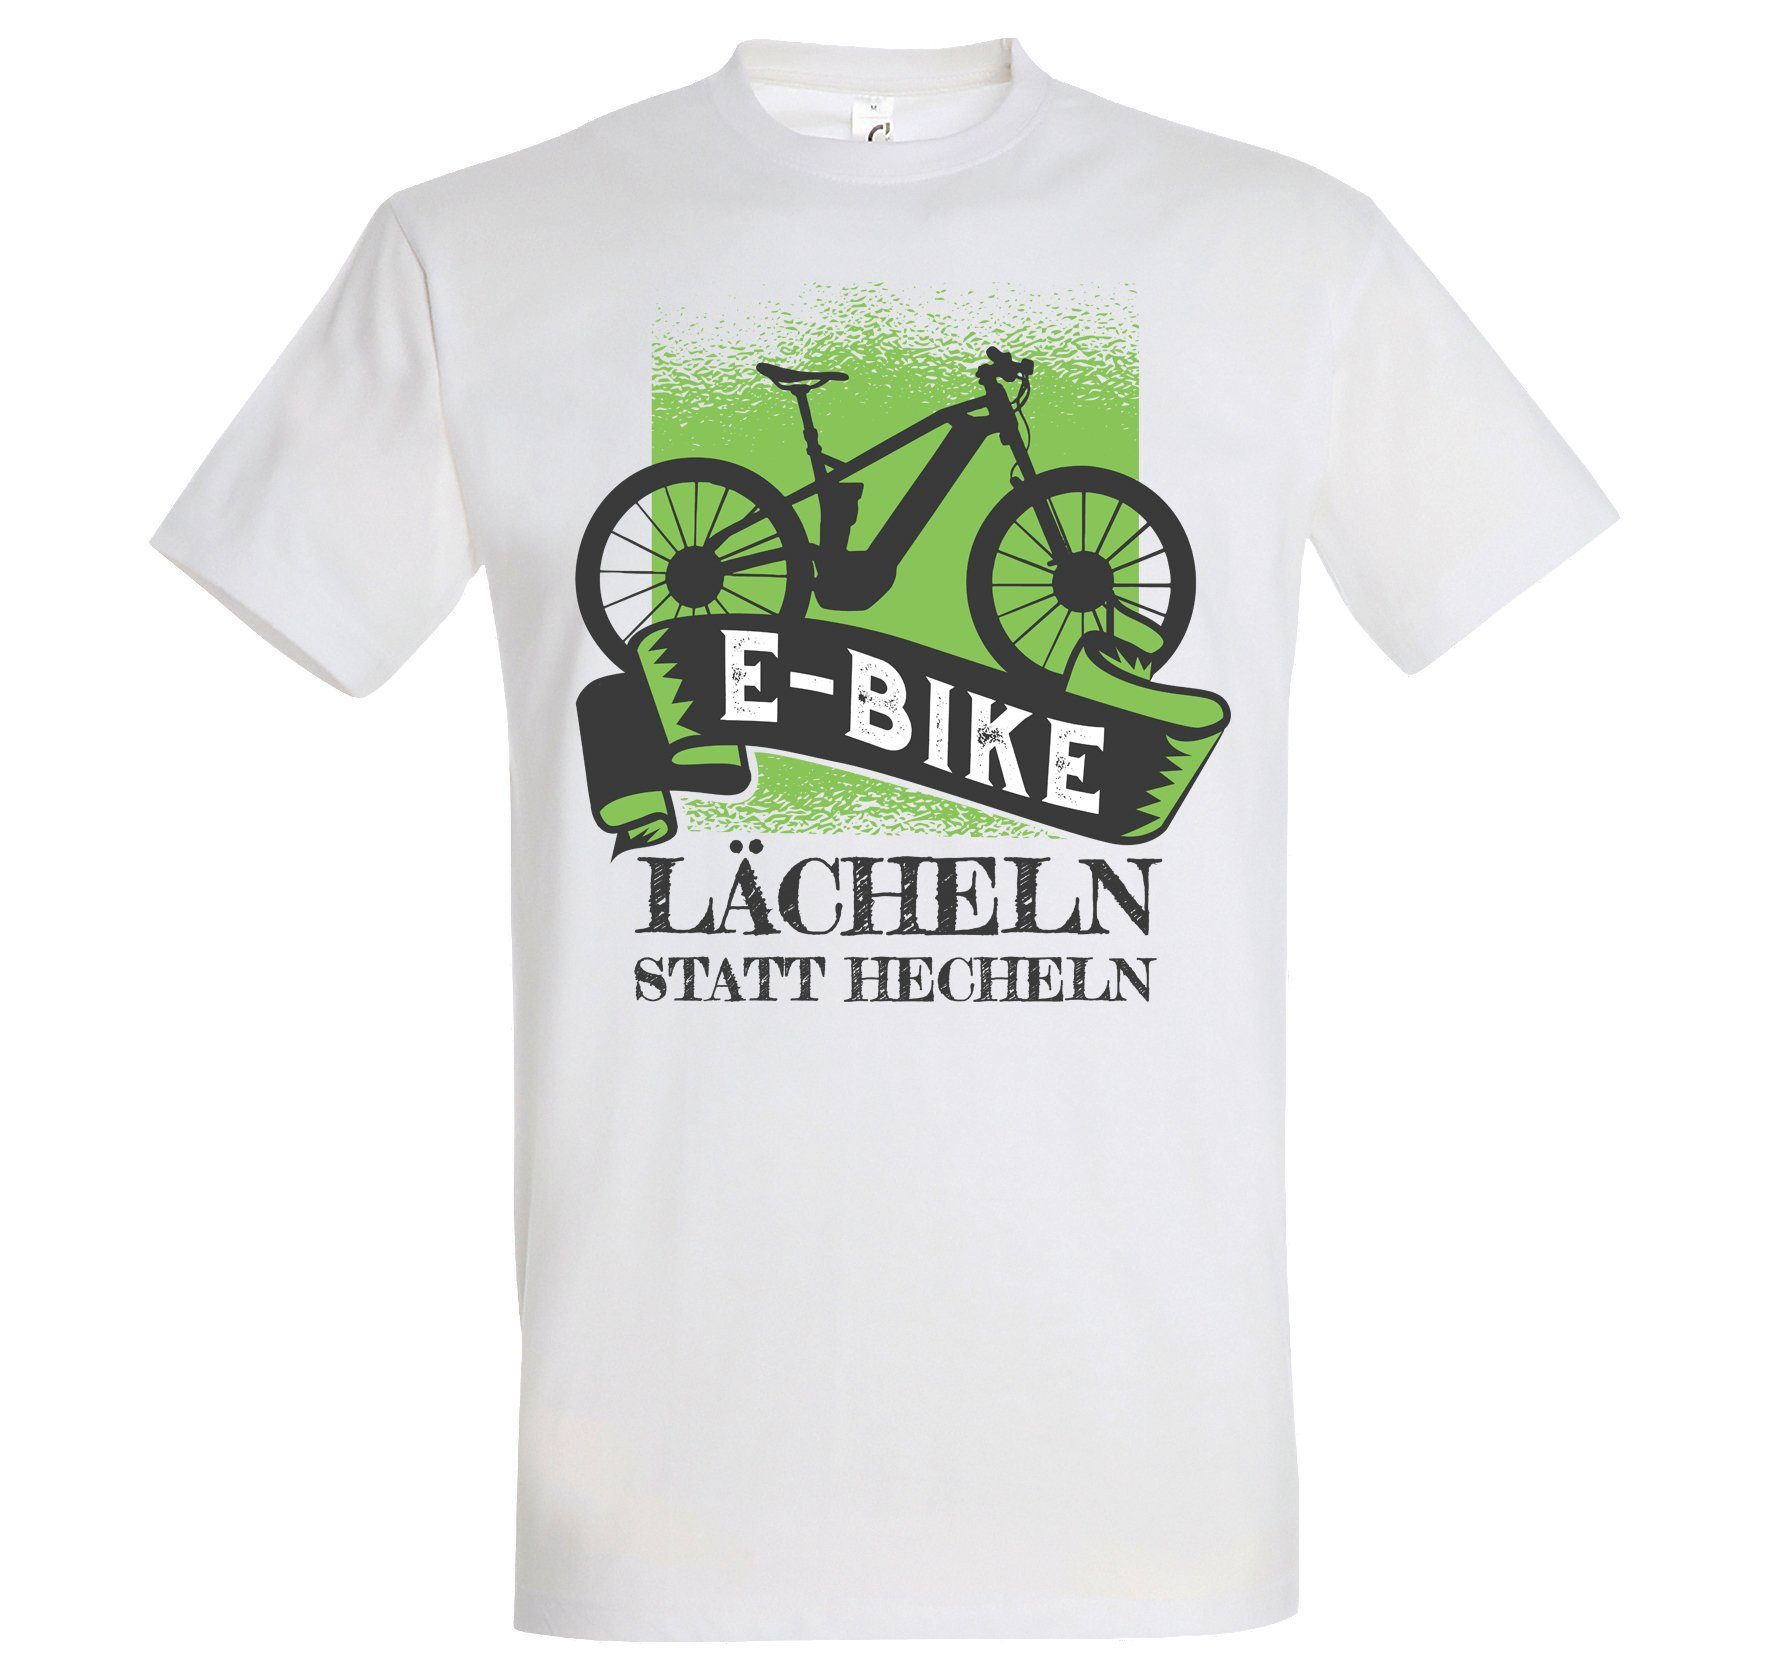 Shirt Statt Herren Frontprint E-Bike mit T-Shirt Hecheln lutsigem Designz Lächeln Youth Weiß